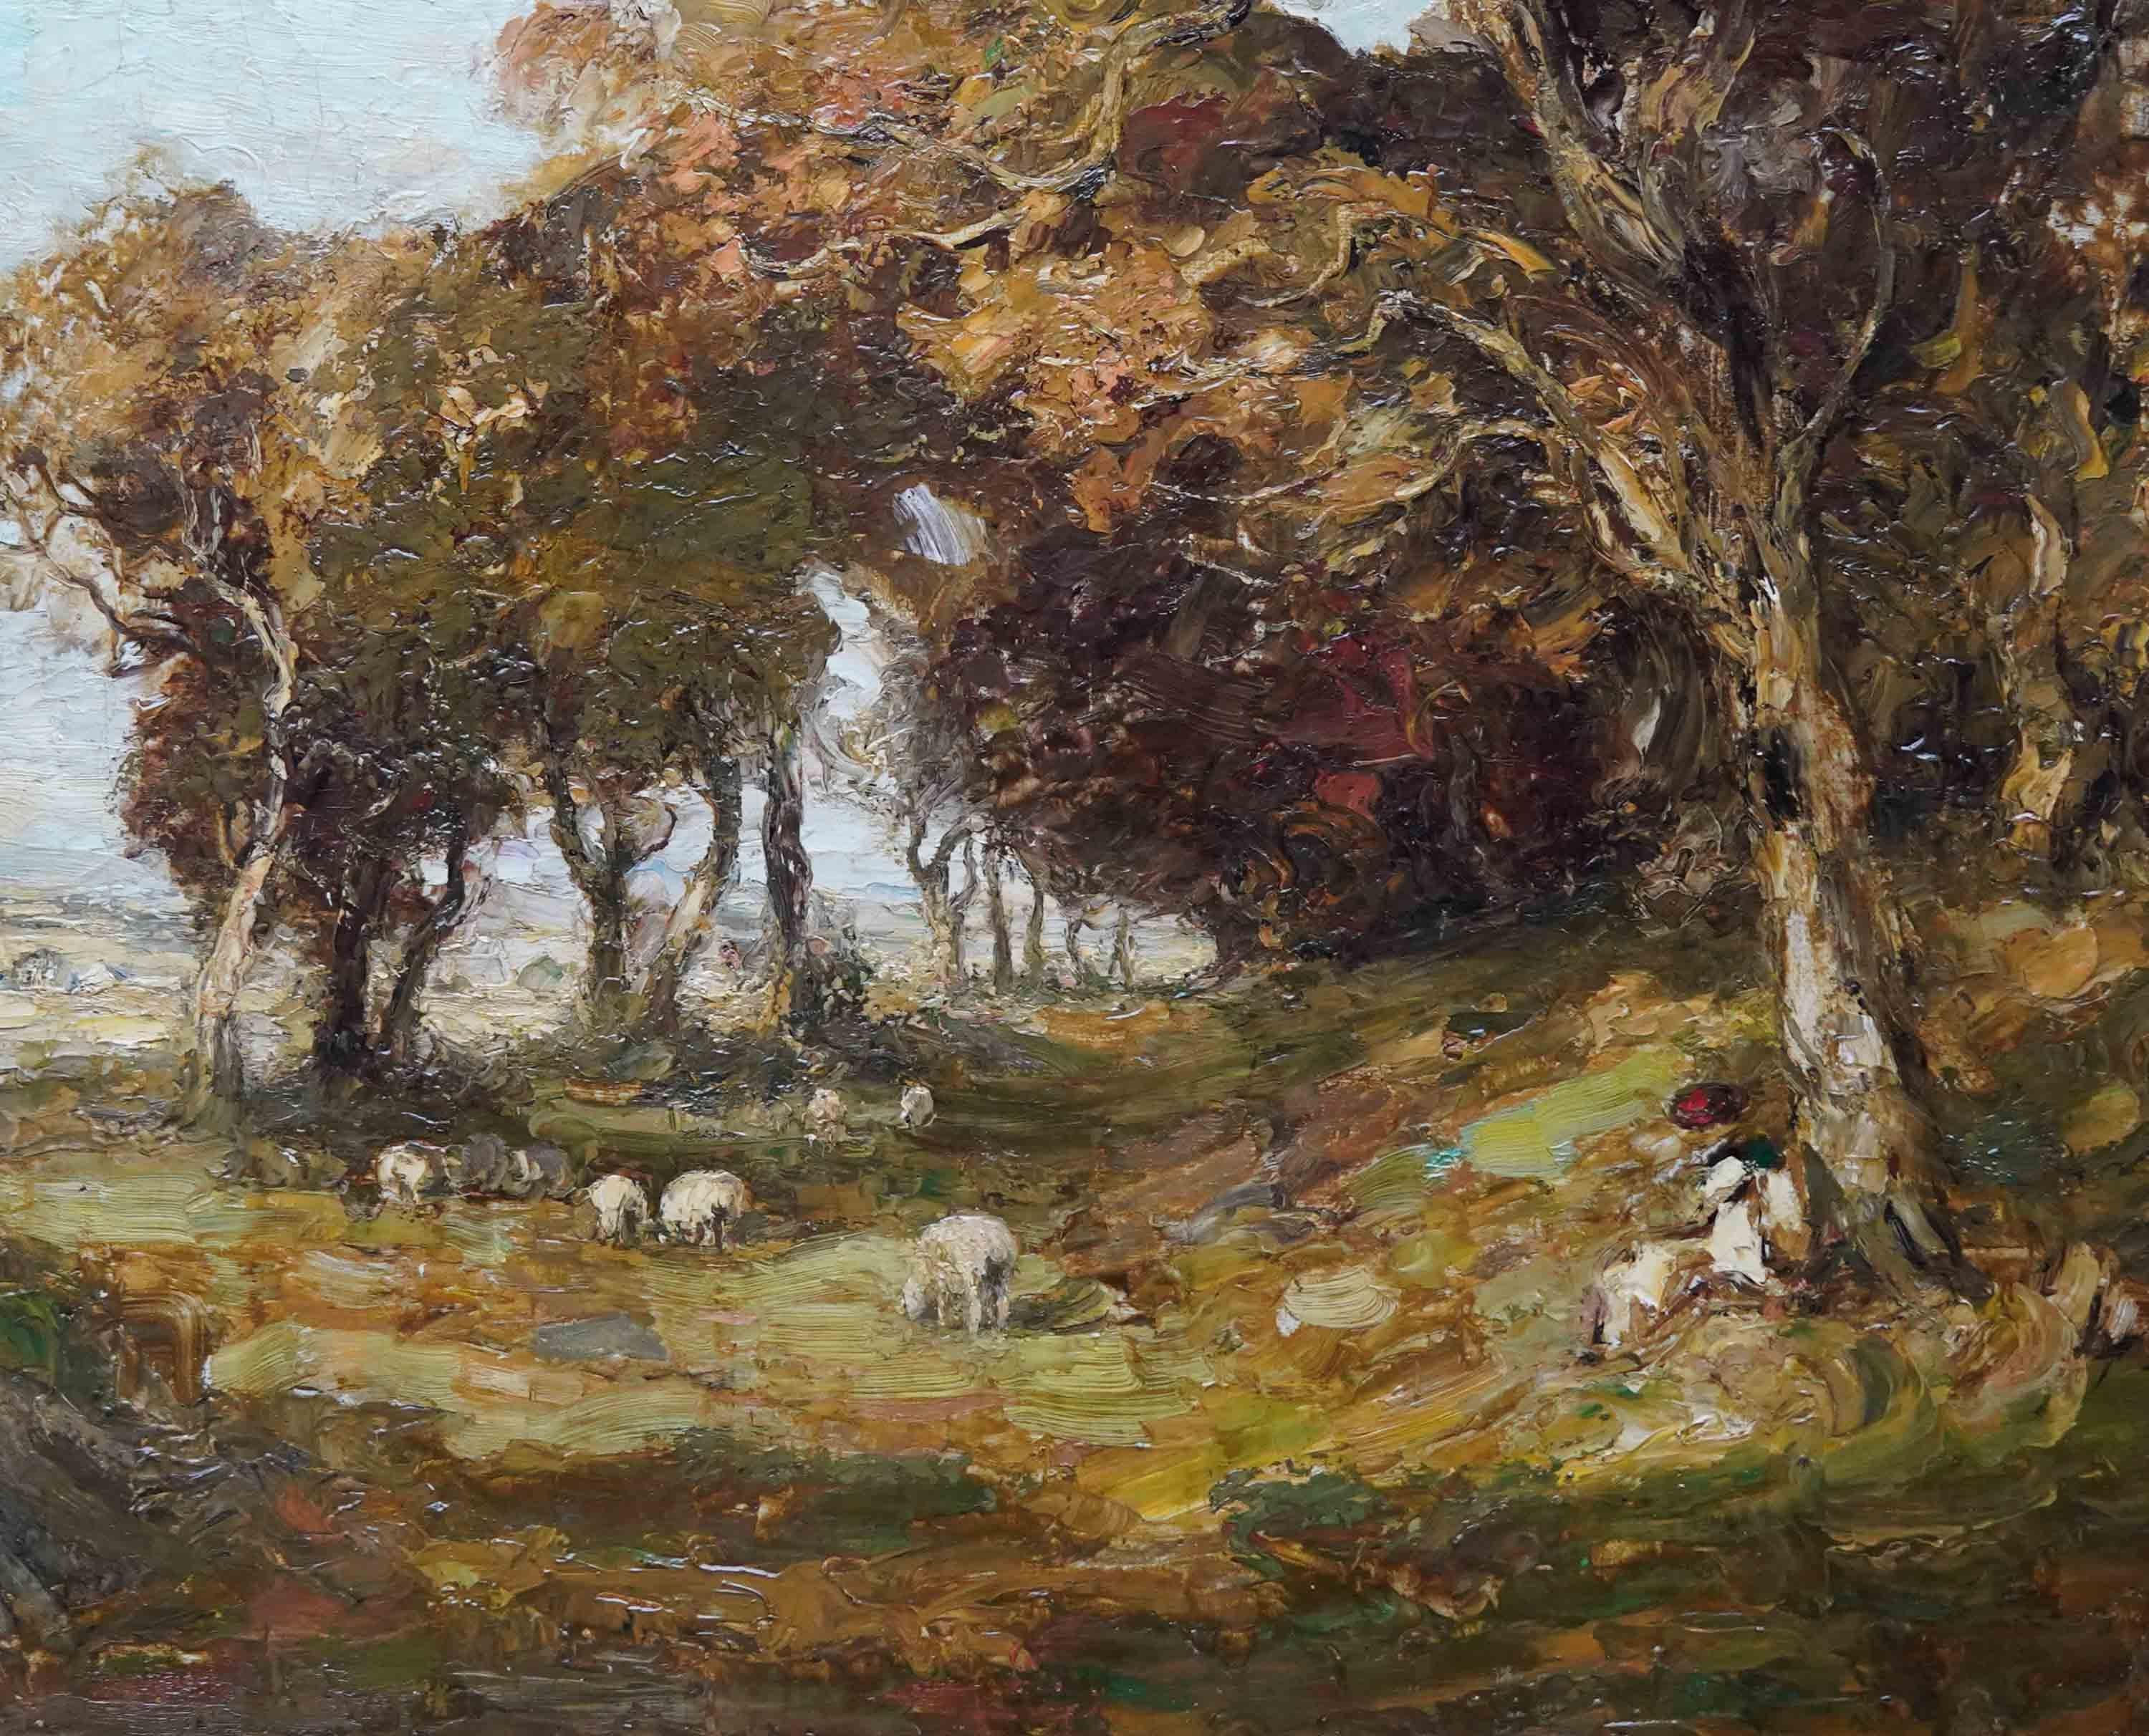 Dieses schöne schottische Ölgemälde im viktorianischen Impressionismus stammt vom bekannten Kirkcudbright-Künstler William Mouncey. Es wurde um 1890 gemalt und zeigt eine Landschaft mit einem Hirten und seiner Herde unter Bäumen. Es gibt eine